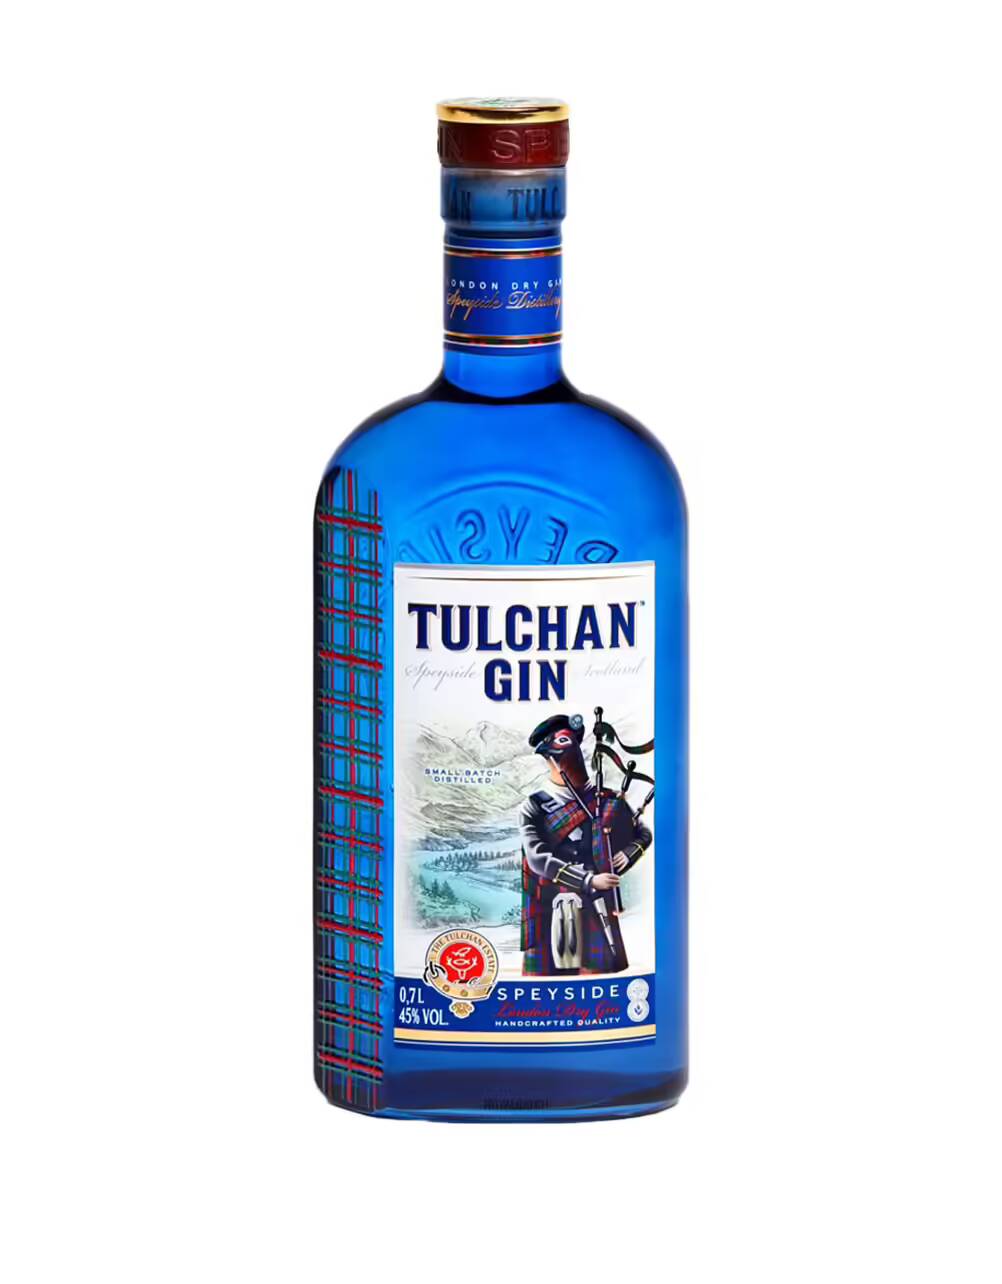 Tulchan Small Batch Speyside London Dry Gin